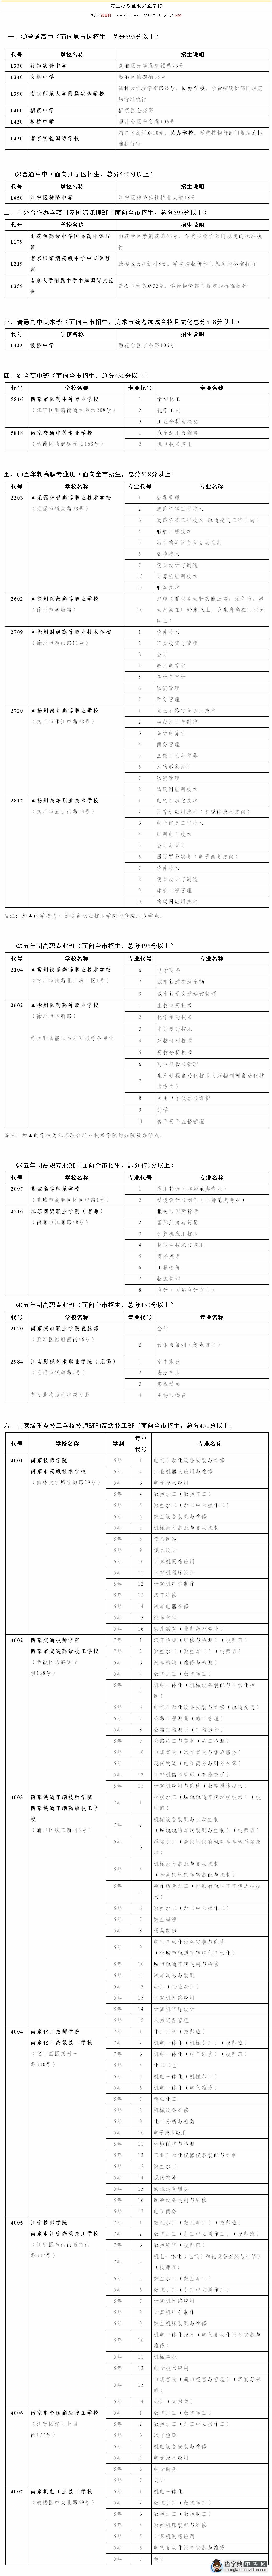 2014南京中考第二批次征求志愿学校1